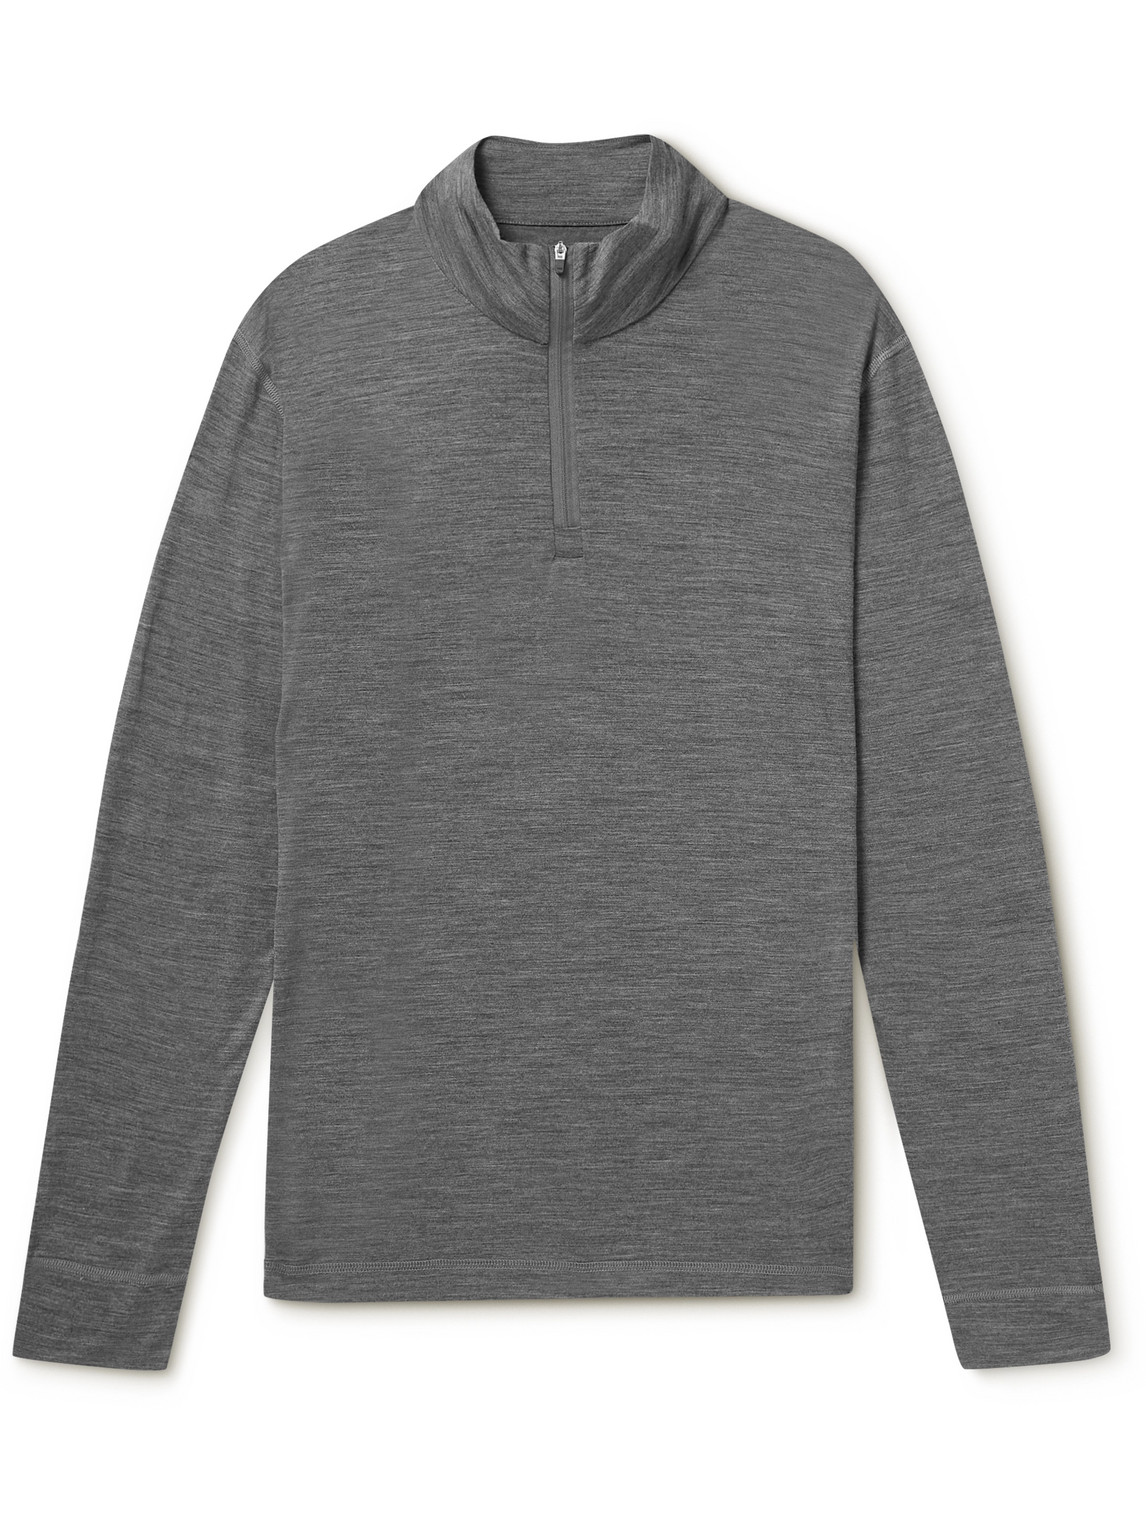 Merino Wool Half-Zip Sweatshirt